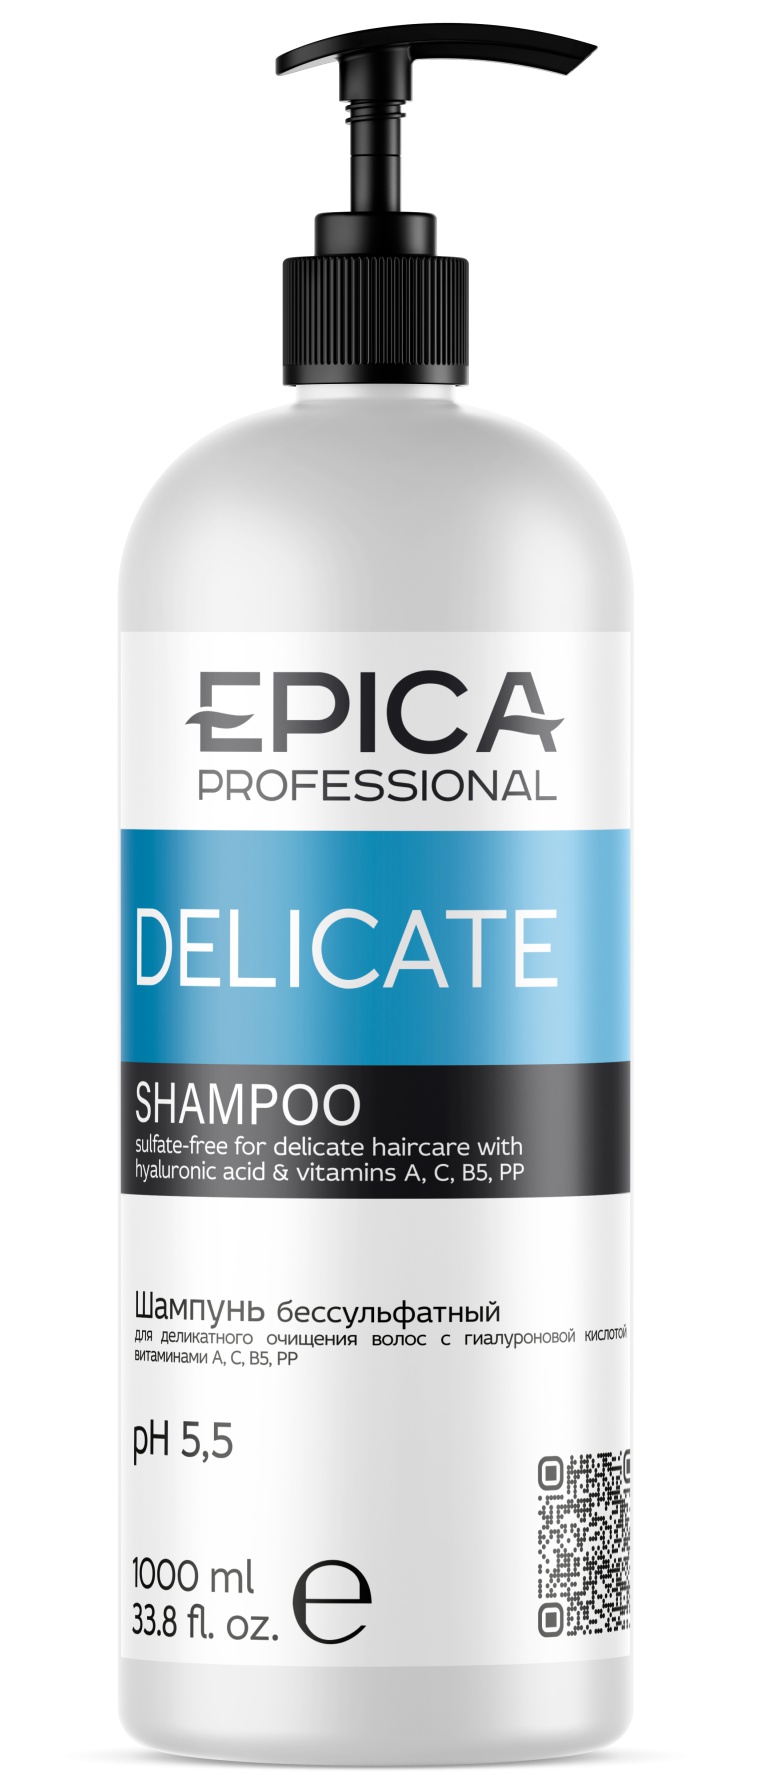 EPICA PROFESSIONAL Delicate Shampoo